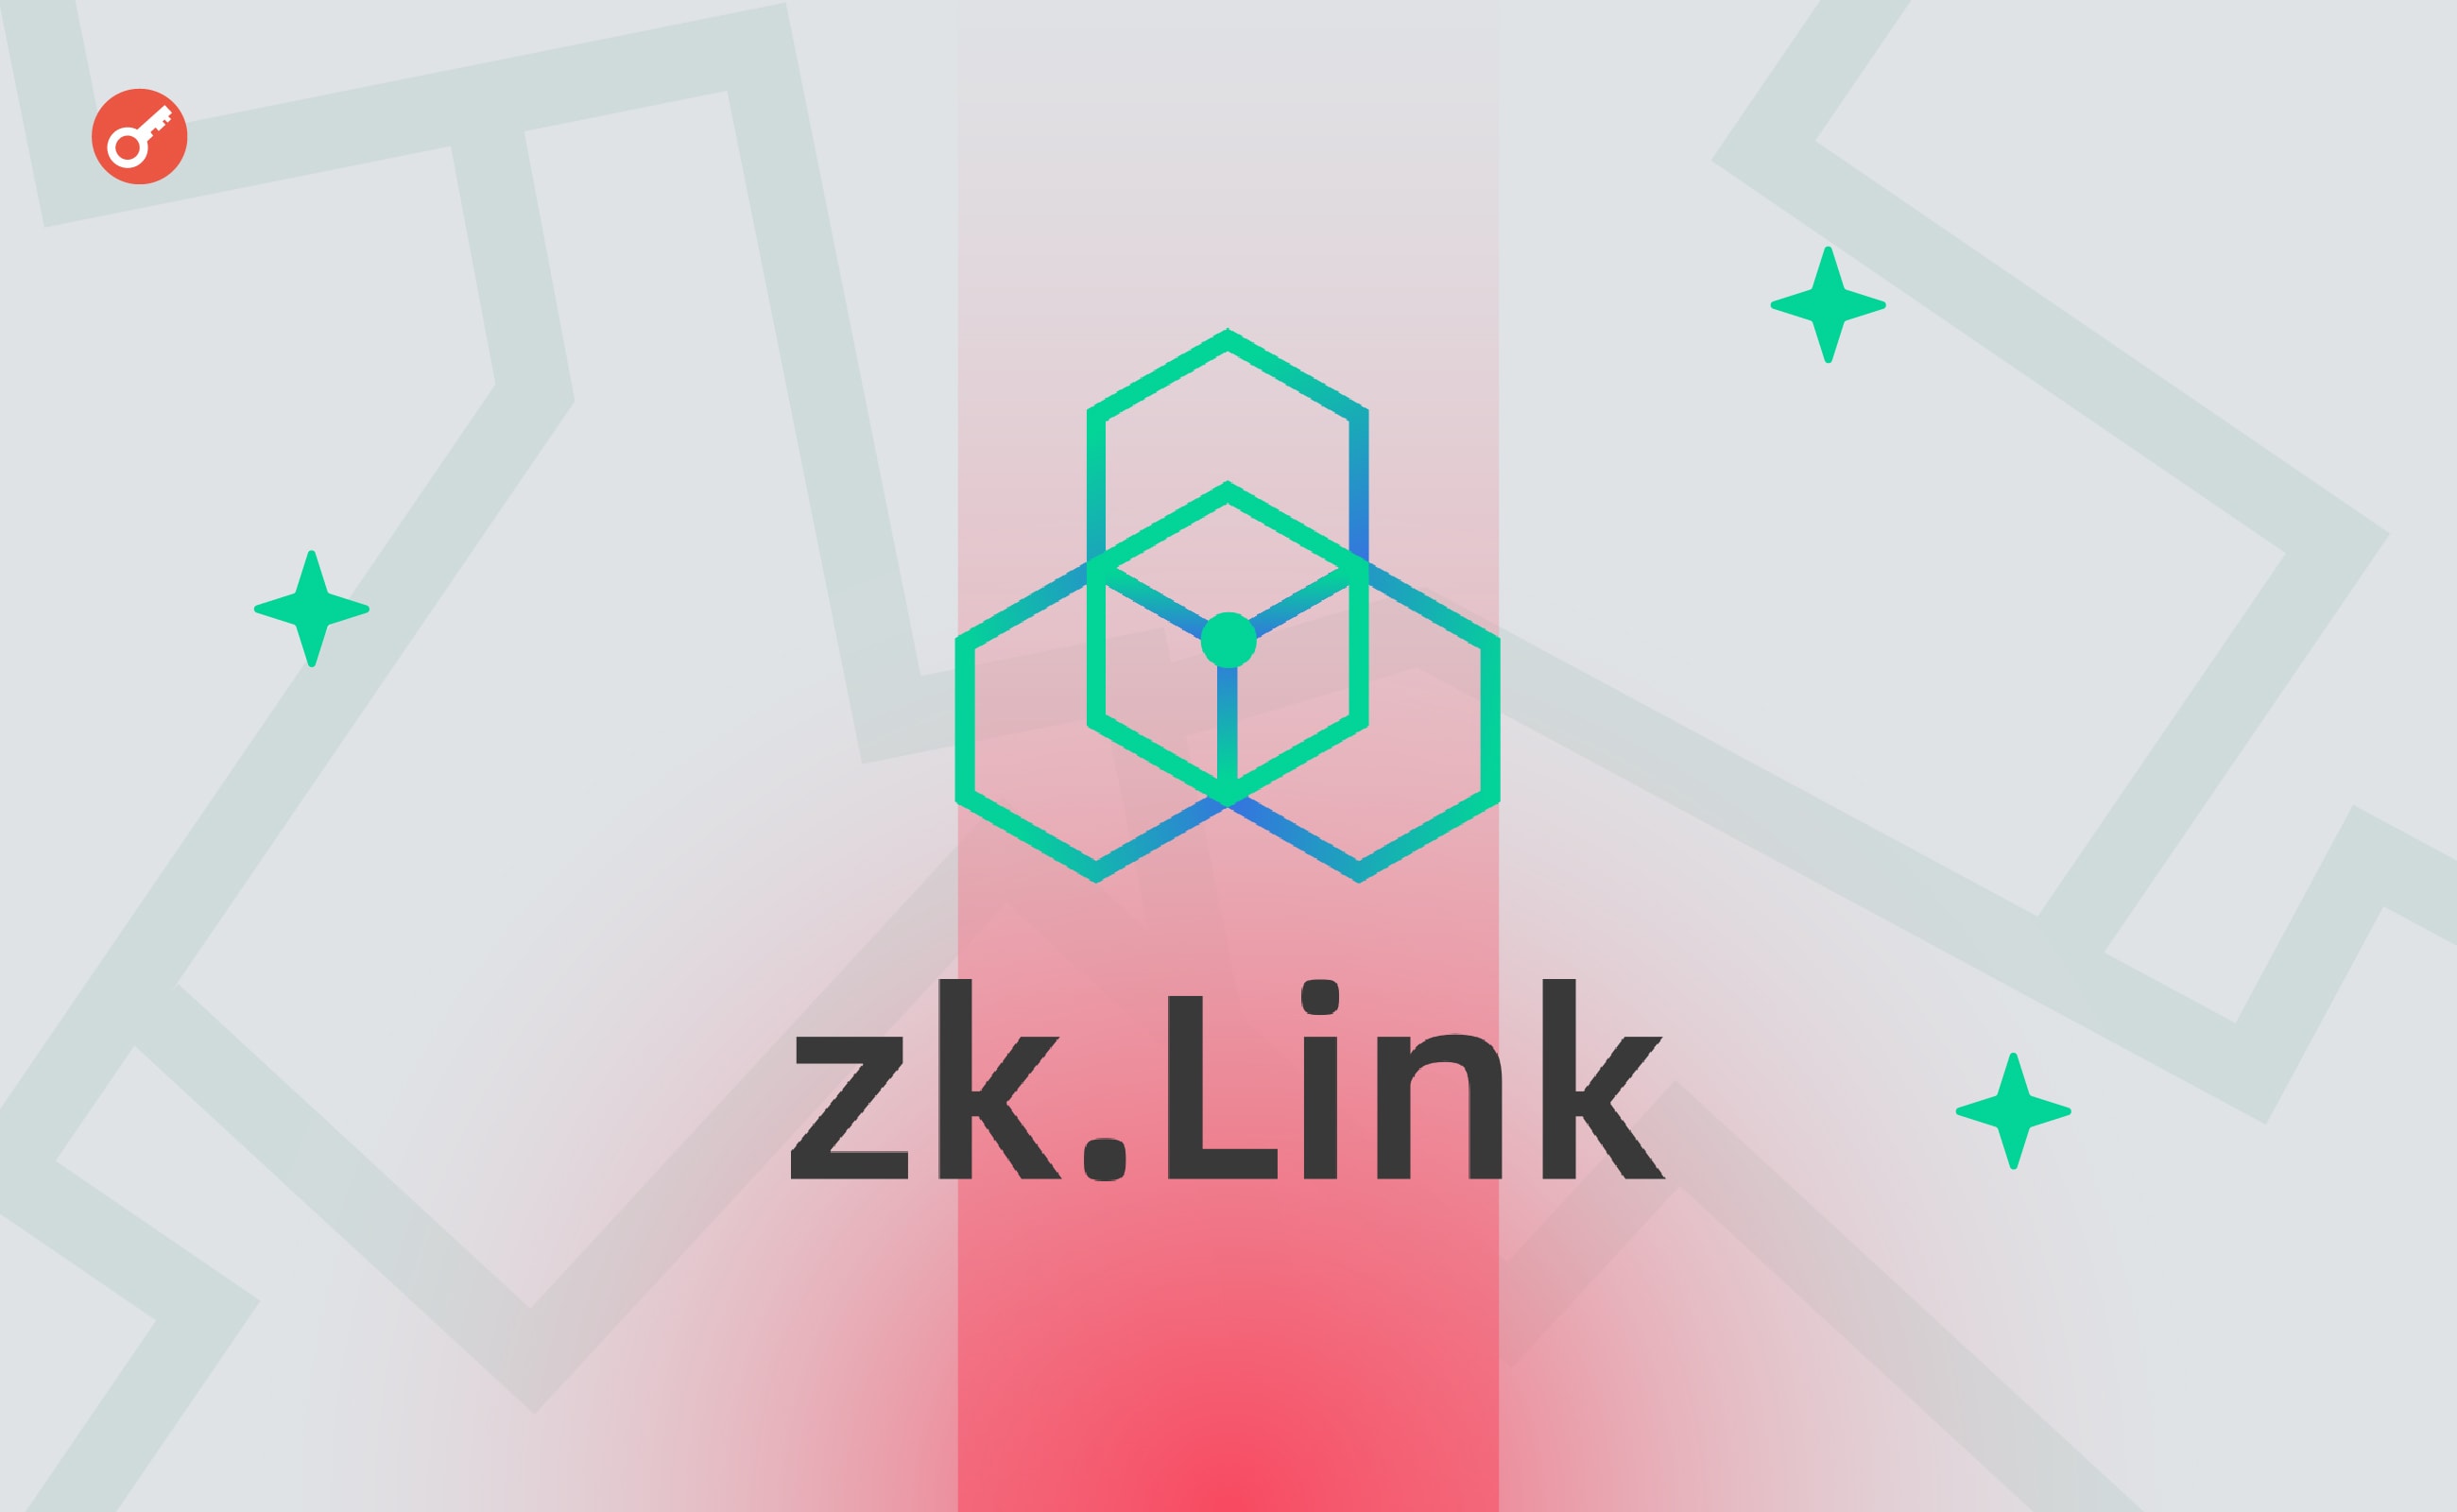 TVL мережі zkLink Nova перетнула позначку в $1 млрд. Головний колаж новини.